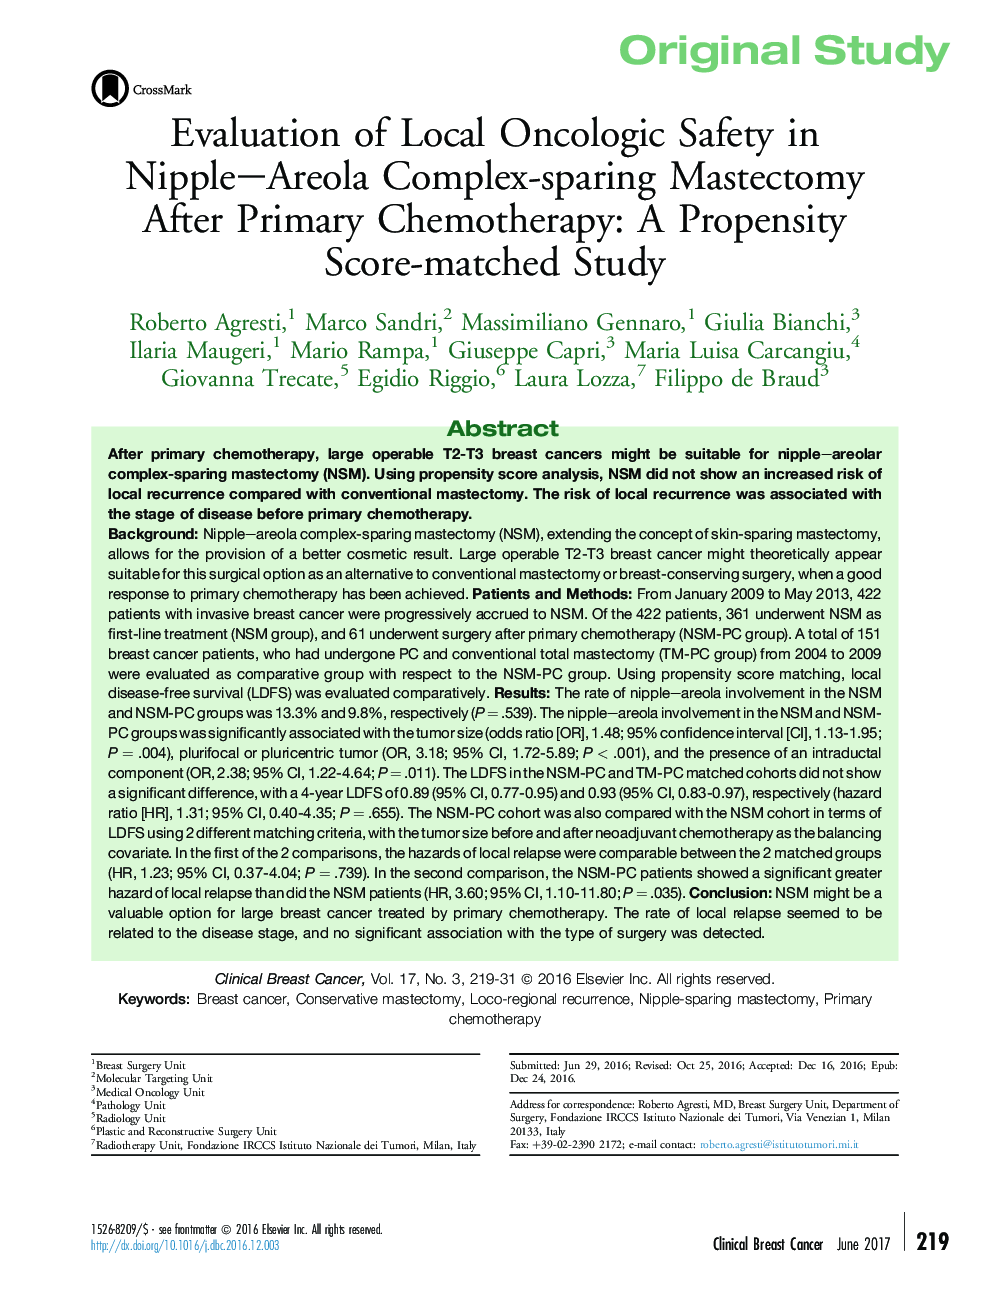 بررسی اصلی ارزیابی ایمنی انکولوژیک محلی در ماسککتومی کمپلکس نیپل - آرئول پس از شیمیدرمانی اولیه: مطالعه ی همبستگی قیاسی 